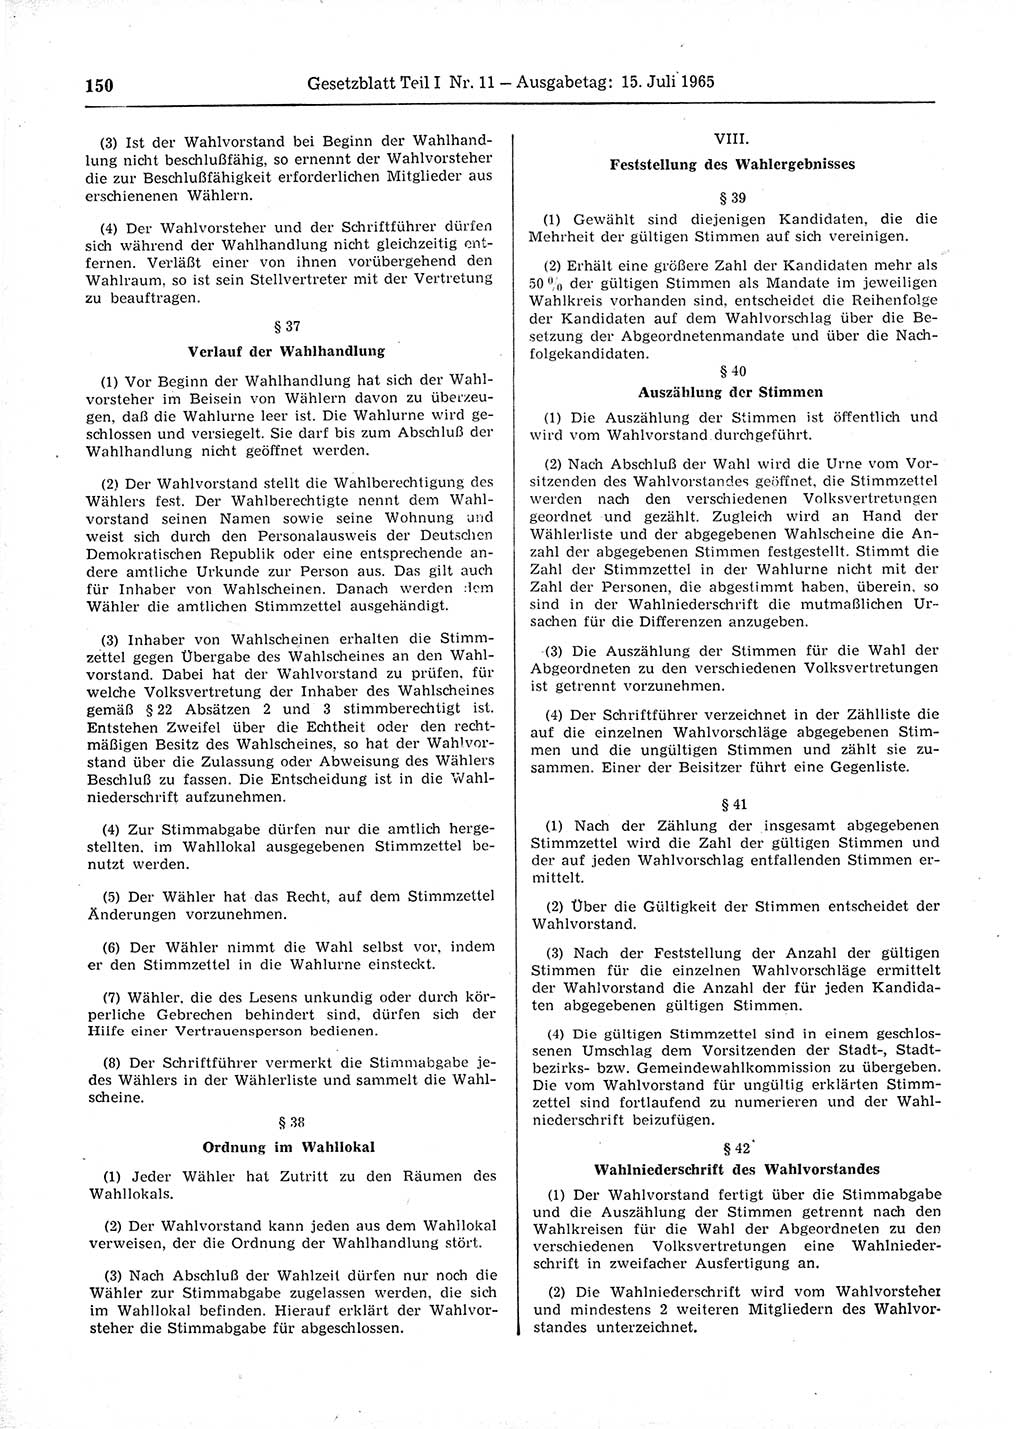 Gesetzblatt (GBl.) der Deutschen Demokratischen Republik (DDR) Teil Ⅰ 1965, Seite 150 (GBl. DDR Ⅰ 1965, S. 150)